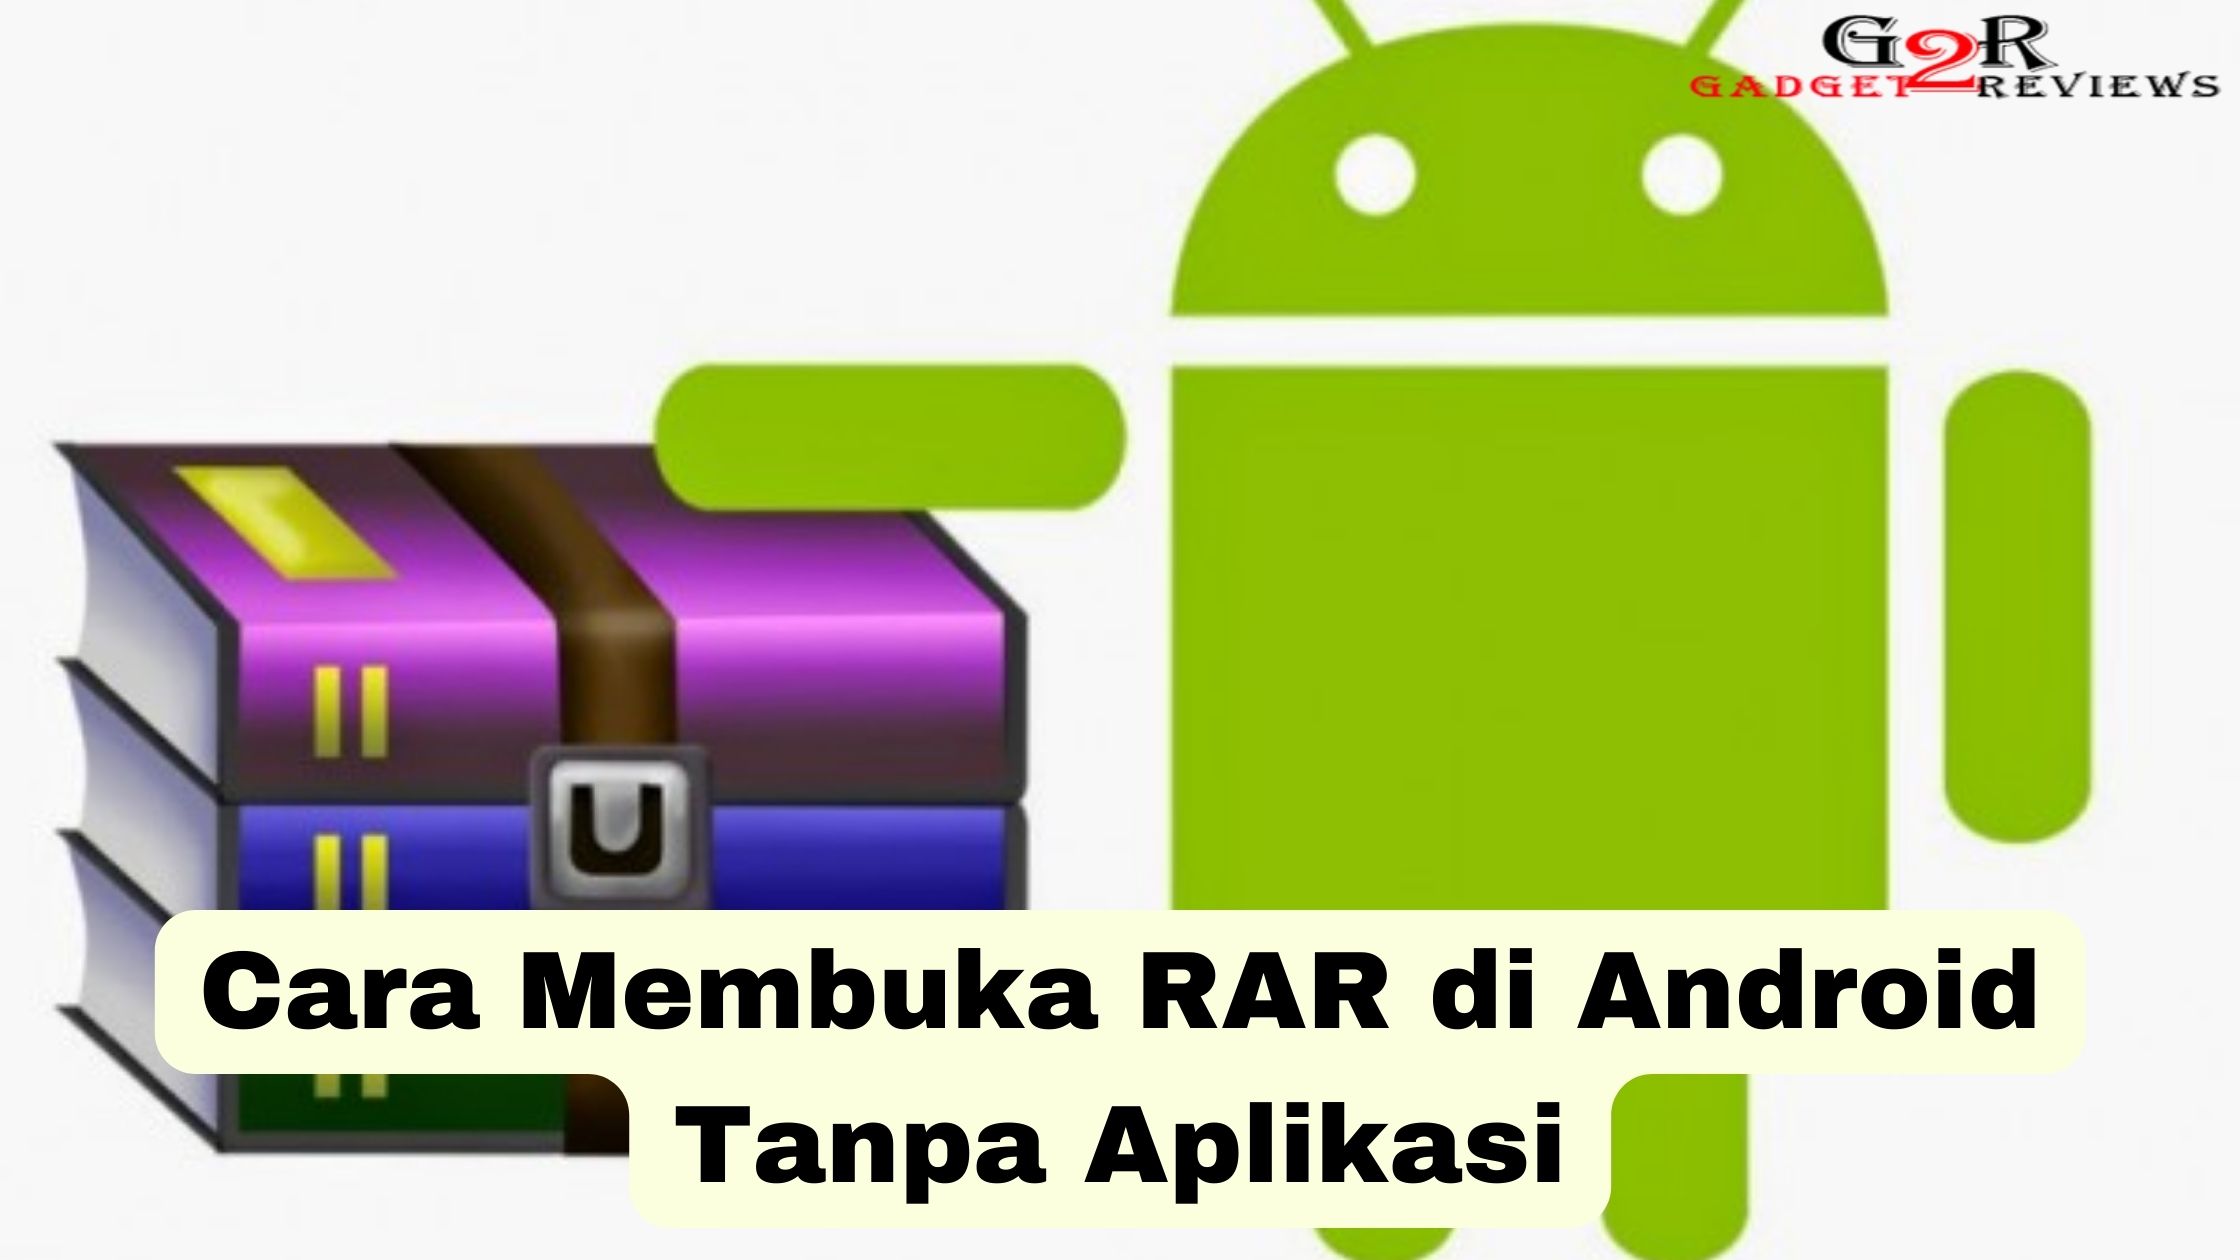 Cara Membuka RAR di Android